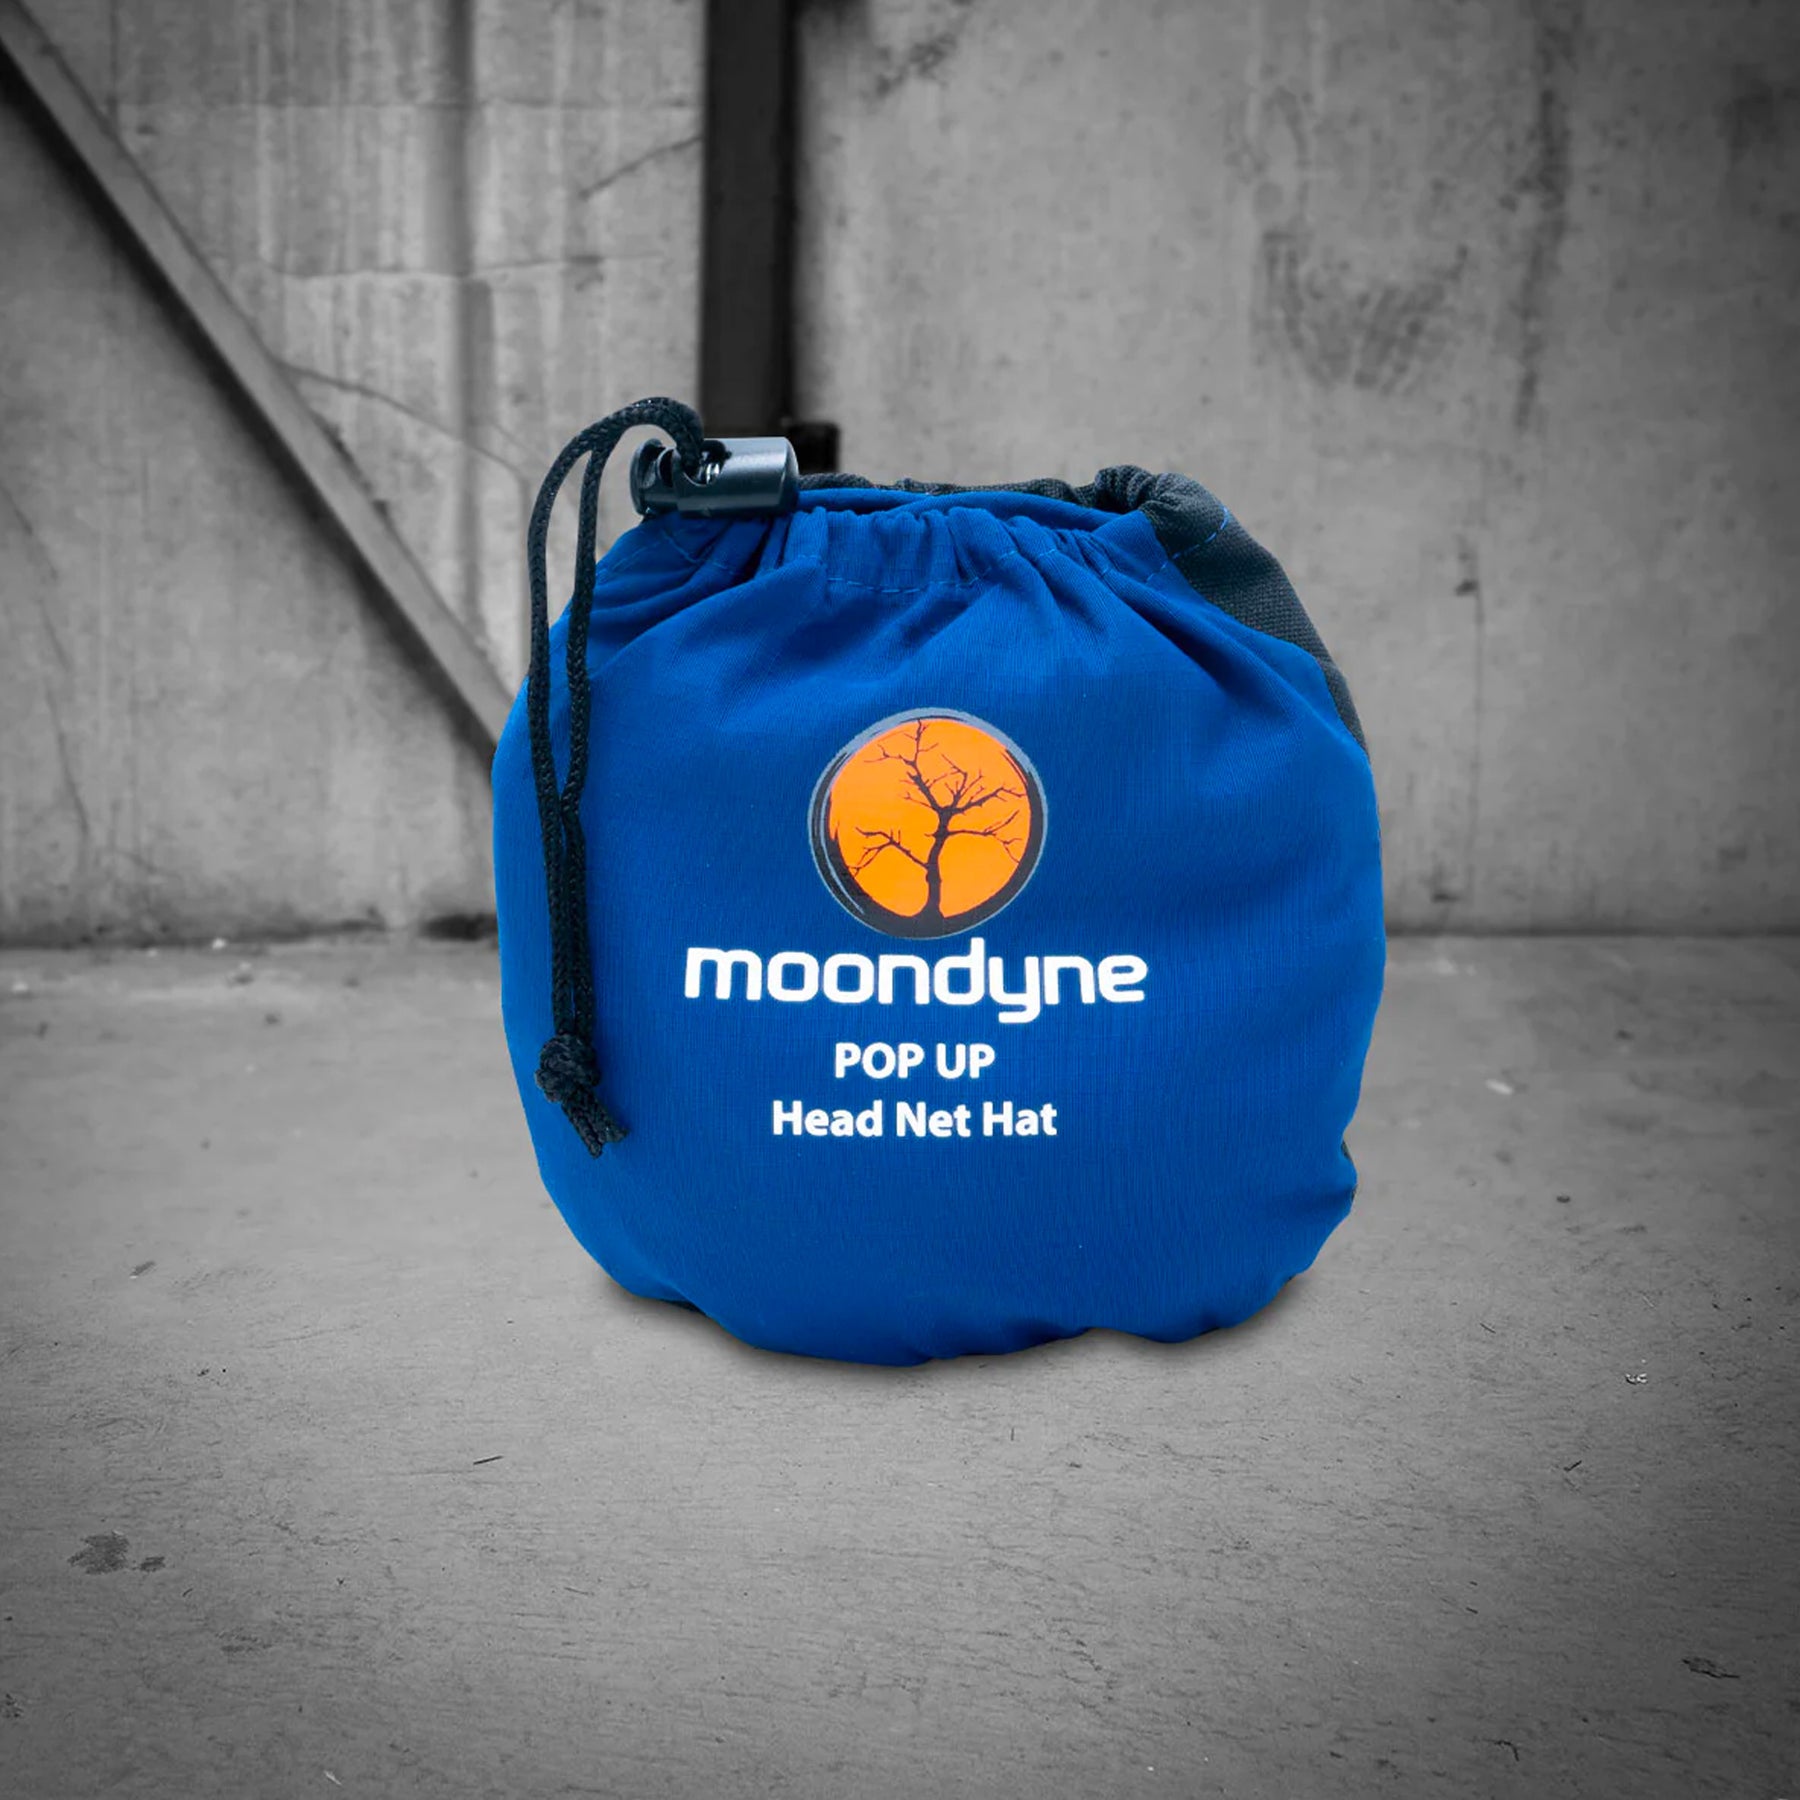 moondyne pop-up head net hat in blue